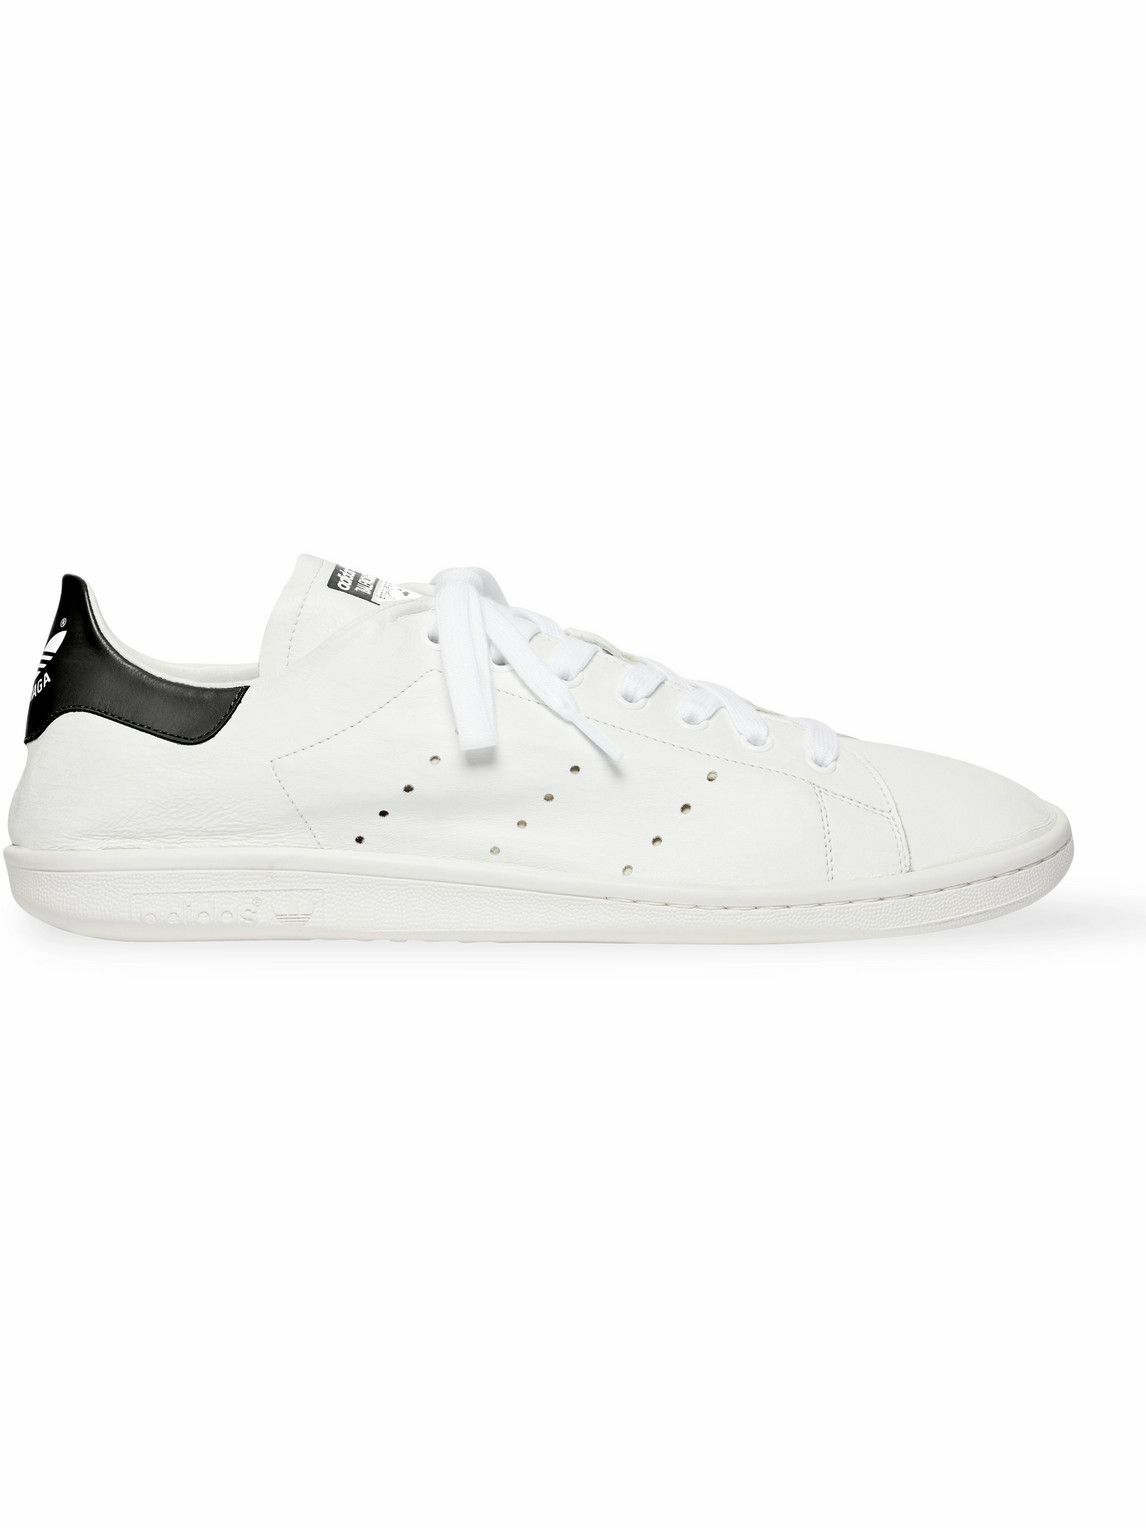 Balenciaga - adidas Stan Smith Leather Sneakers - White Balenciaga